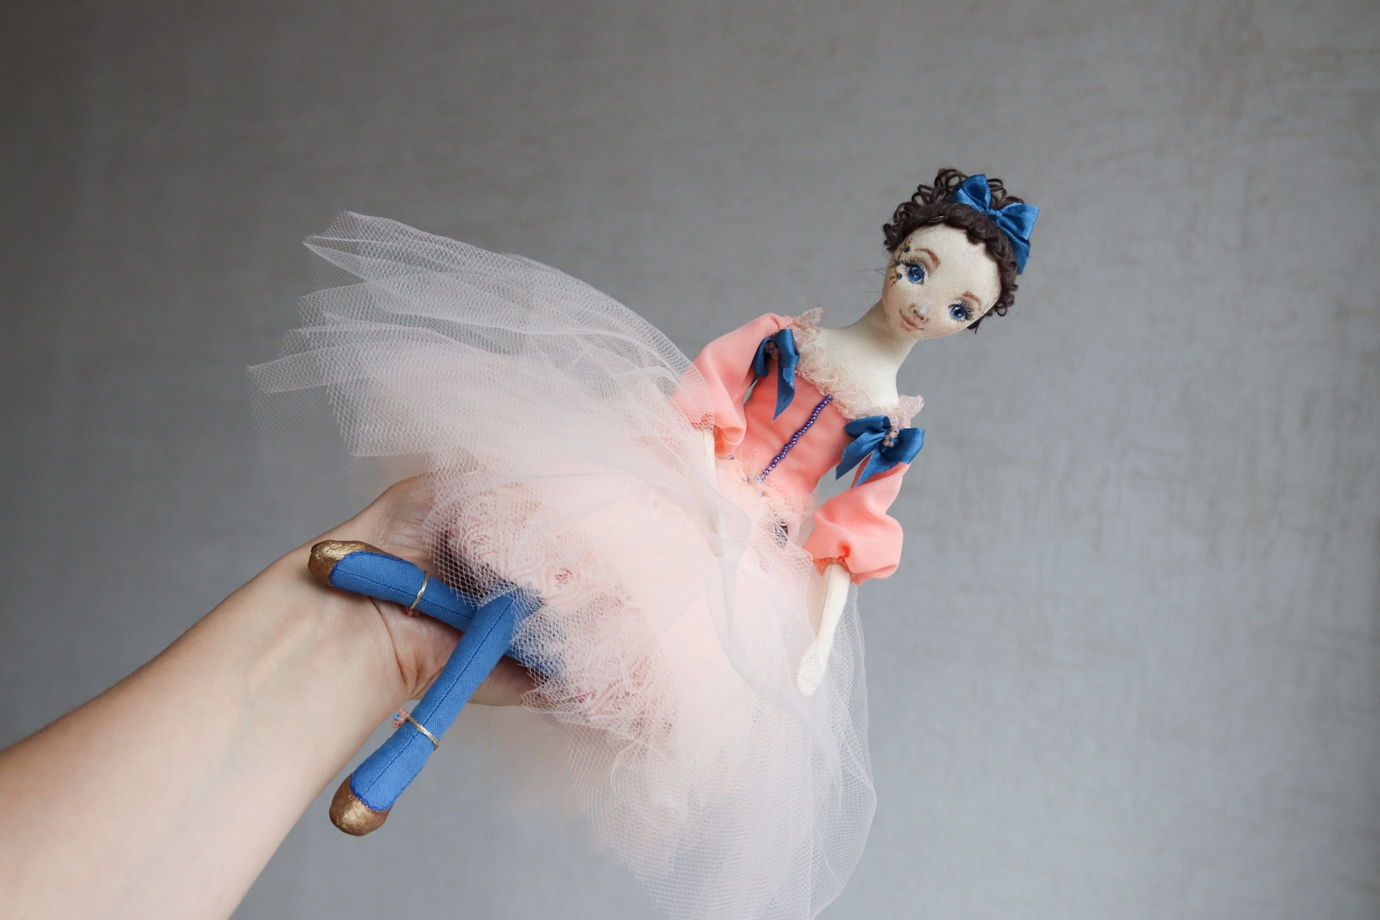 Диана. Интерьерная авторская кукла ручной куклы